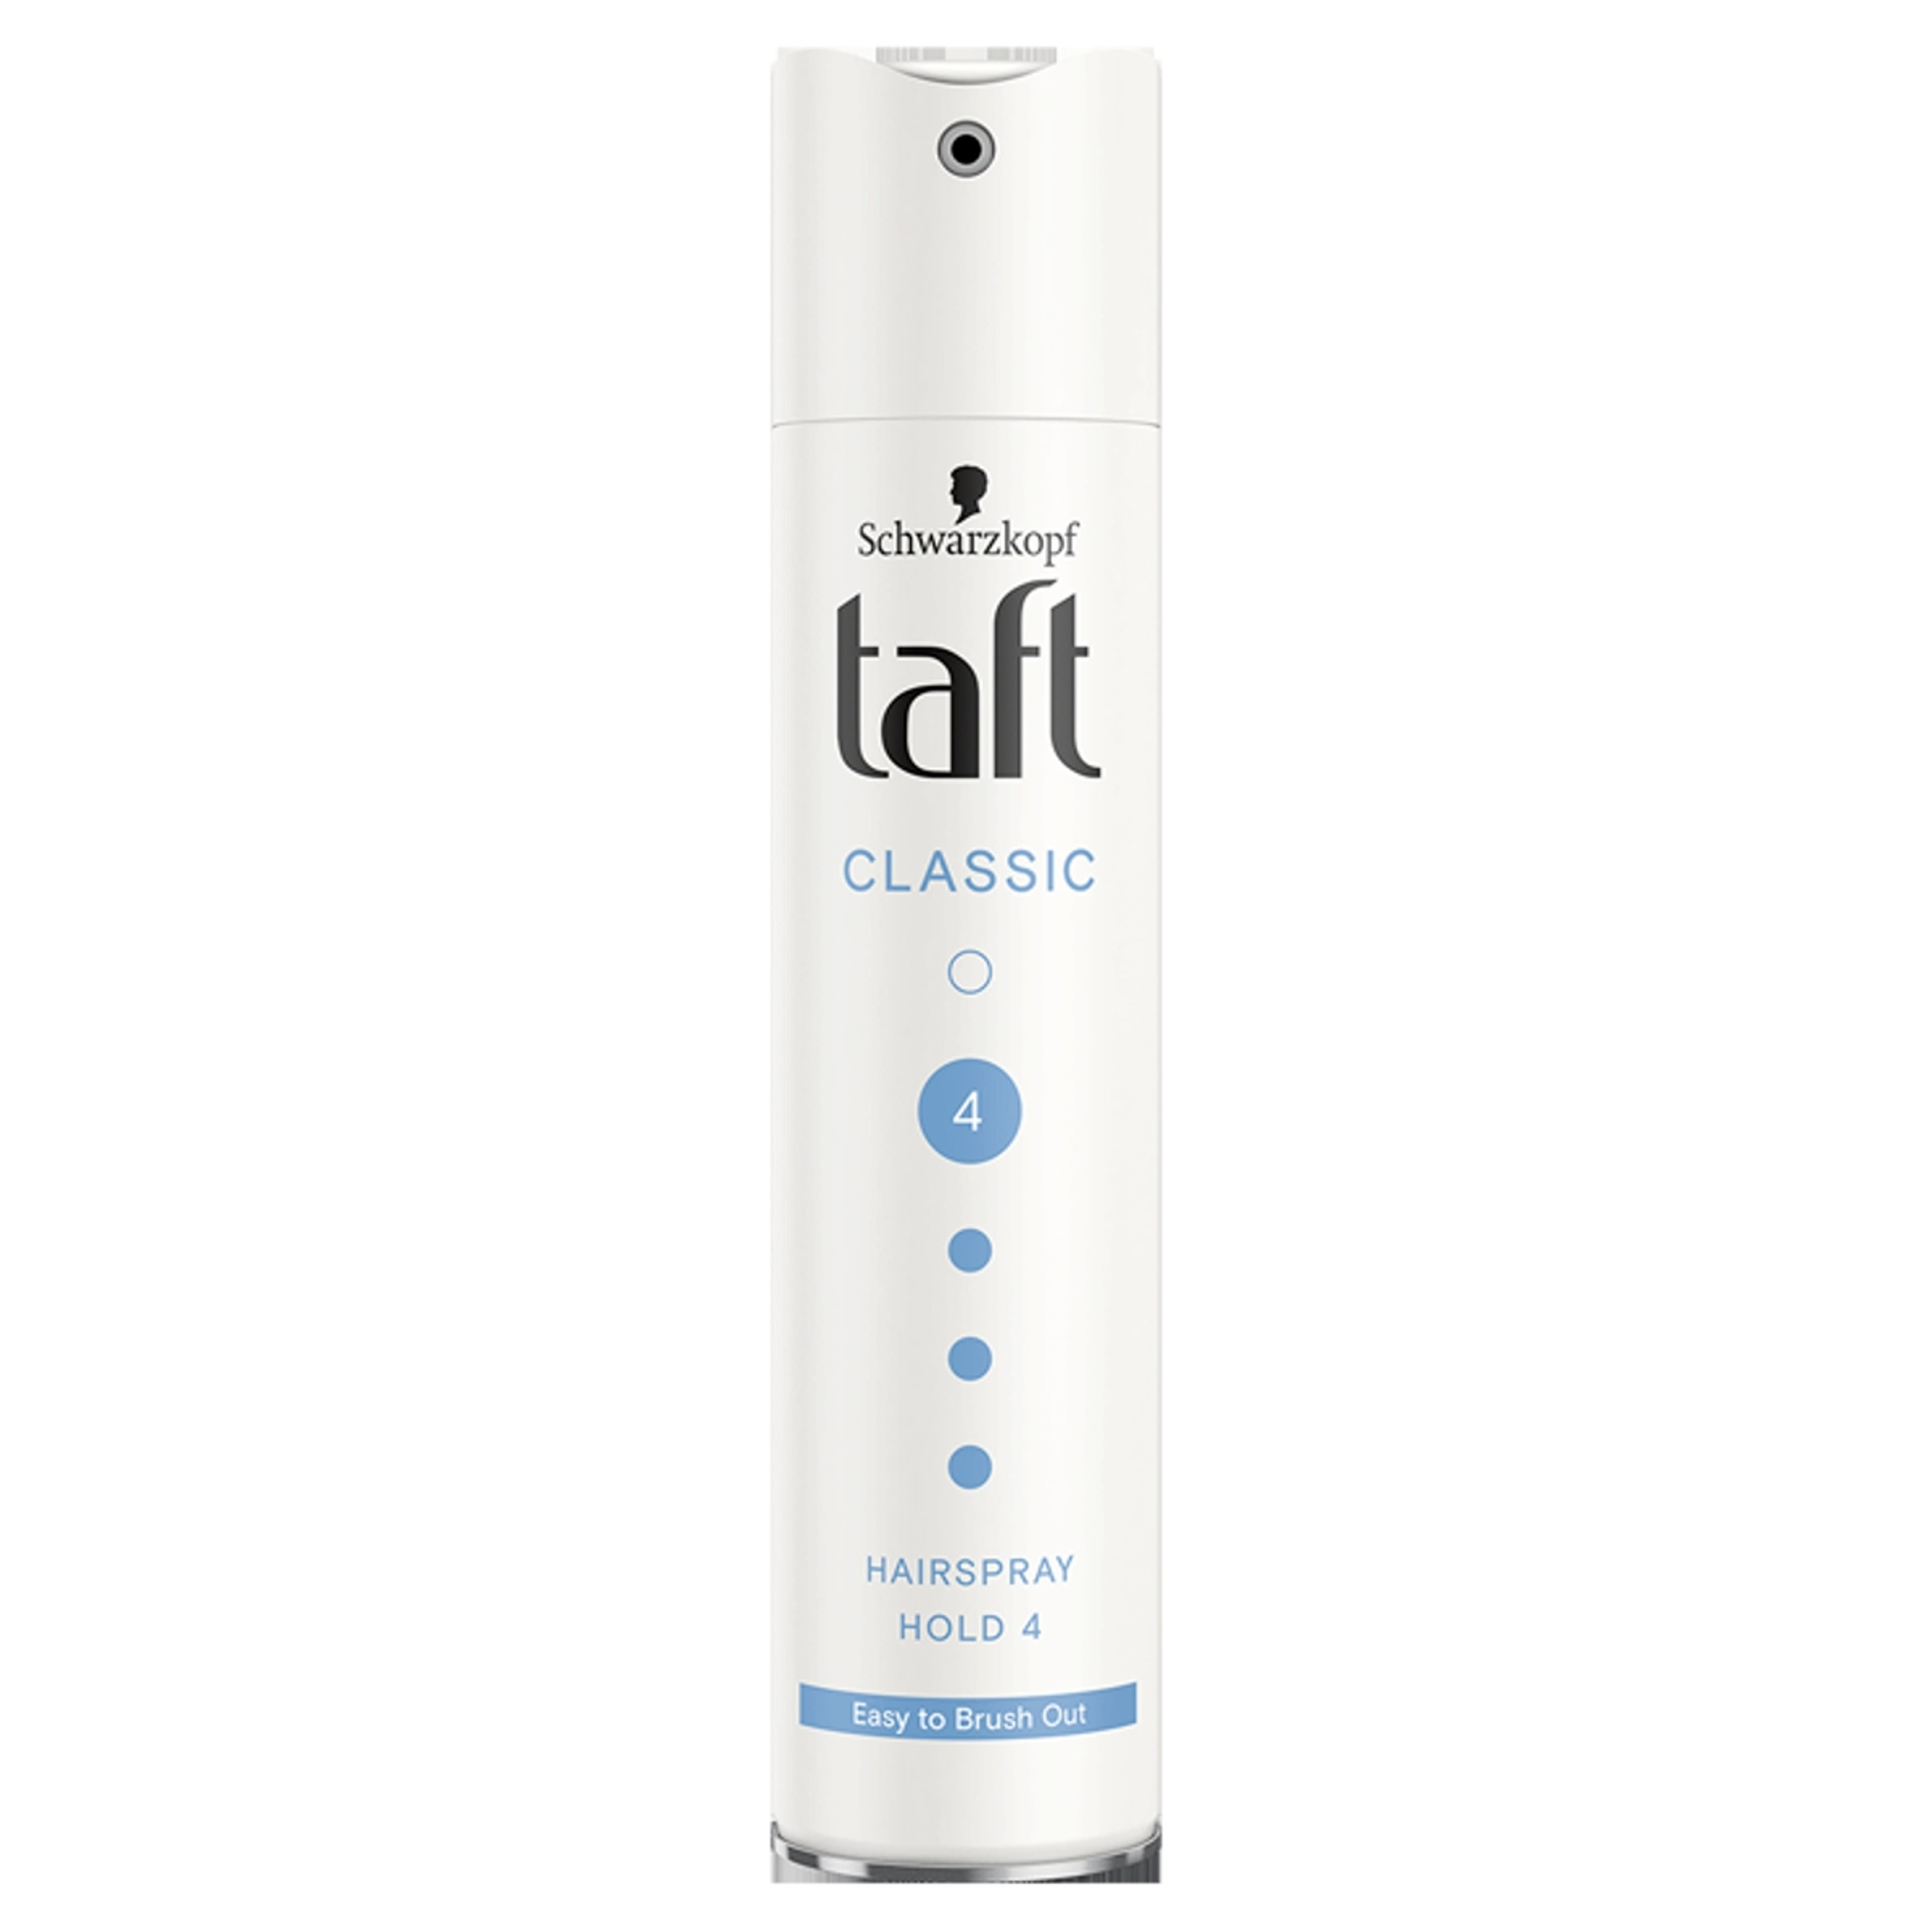 Taft 3 Wetter Classic Extra Erős hajlakk - 250 ml